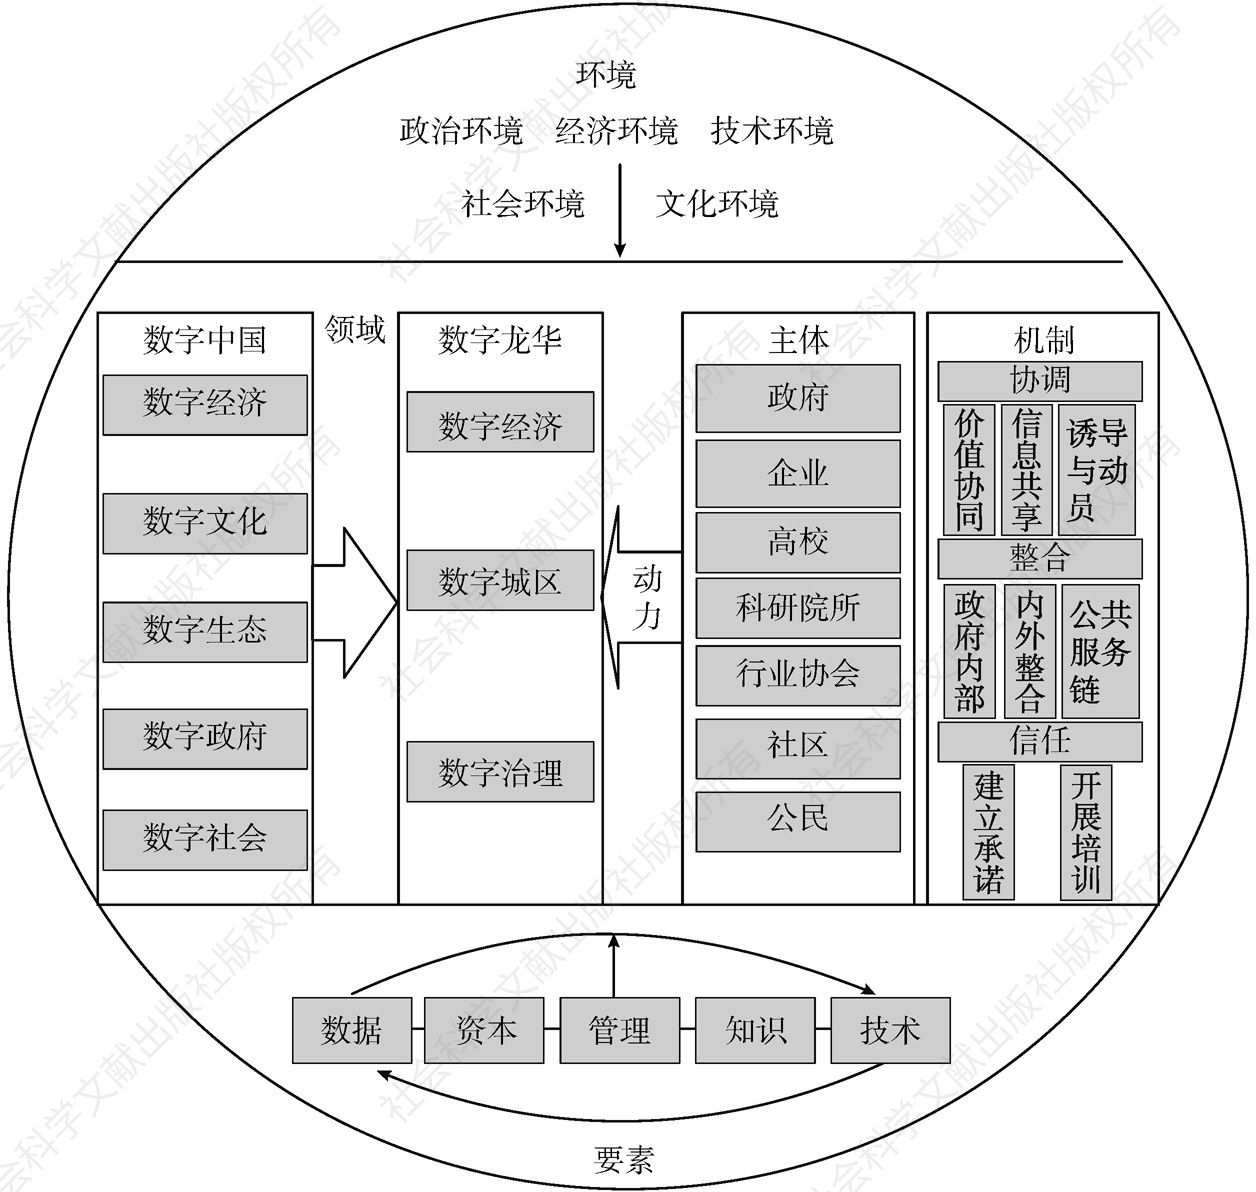 图2-3 龙华全域数字化转型模式框架